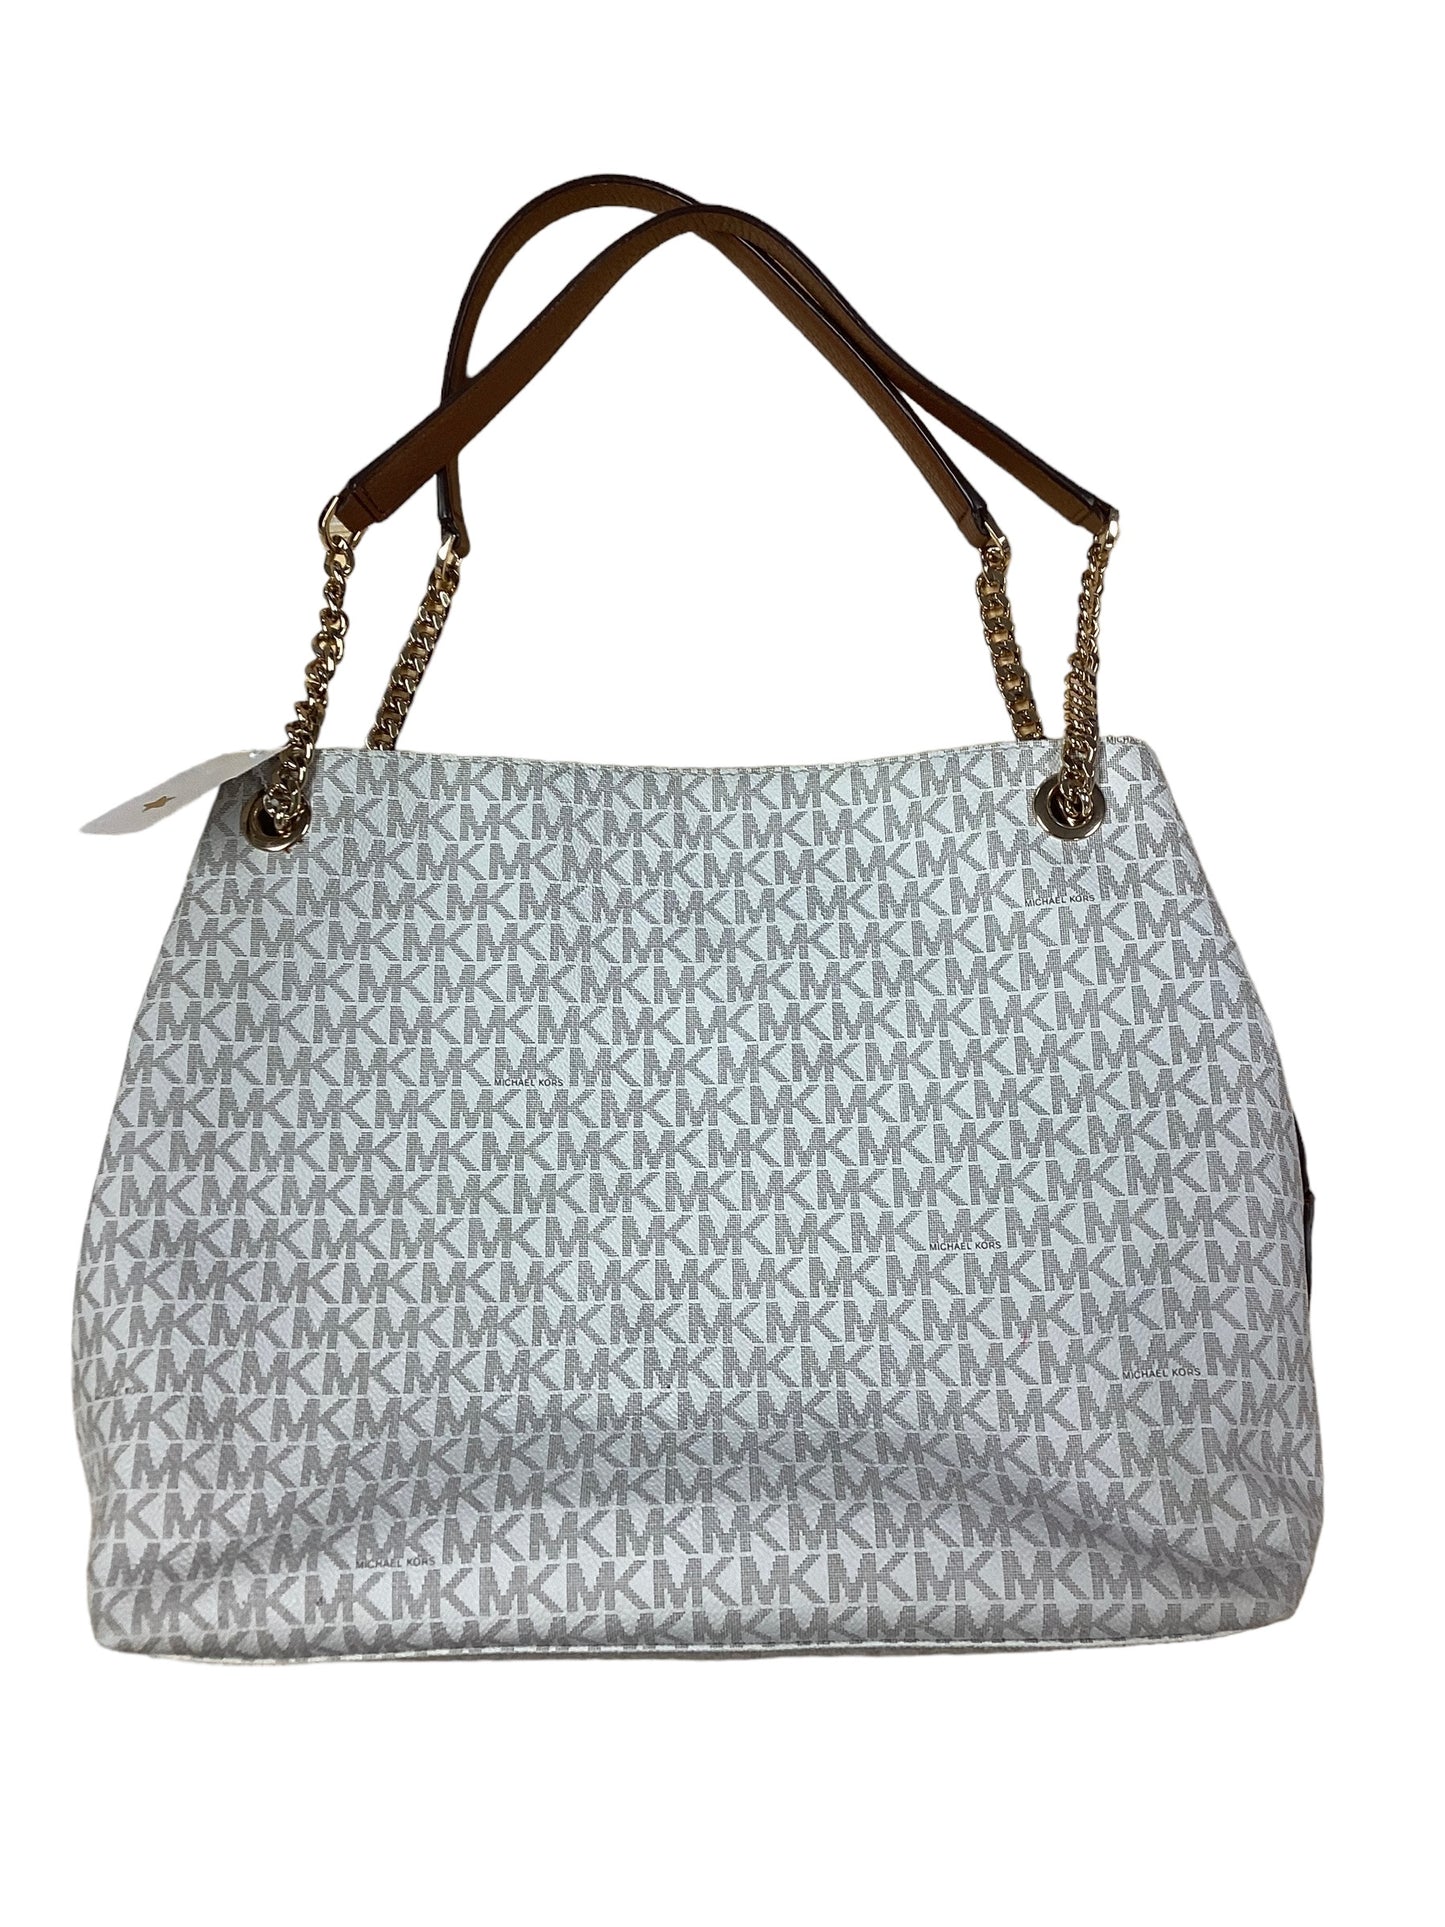 White Handbag Designer Michael Kors, Size Large